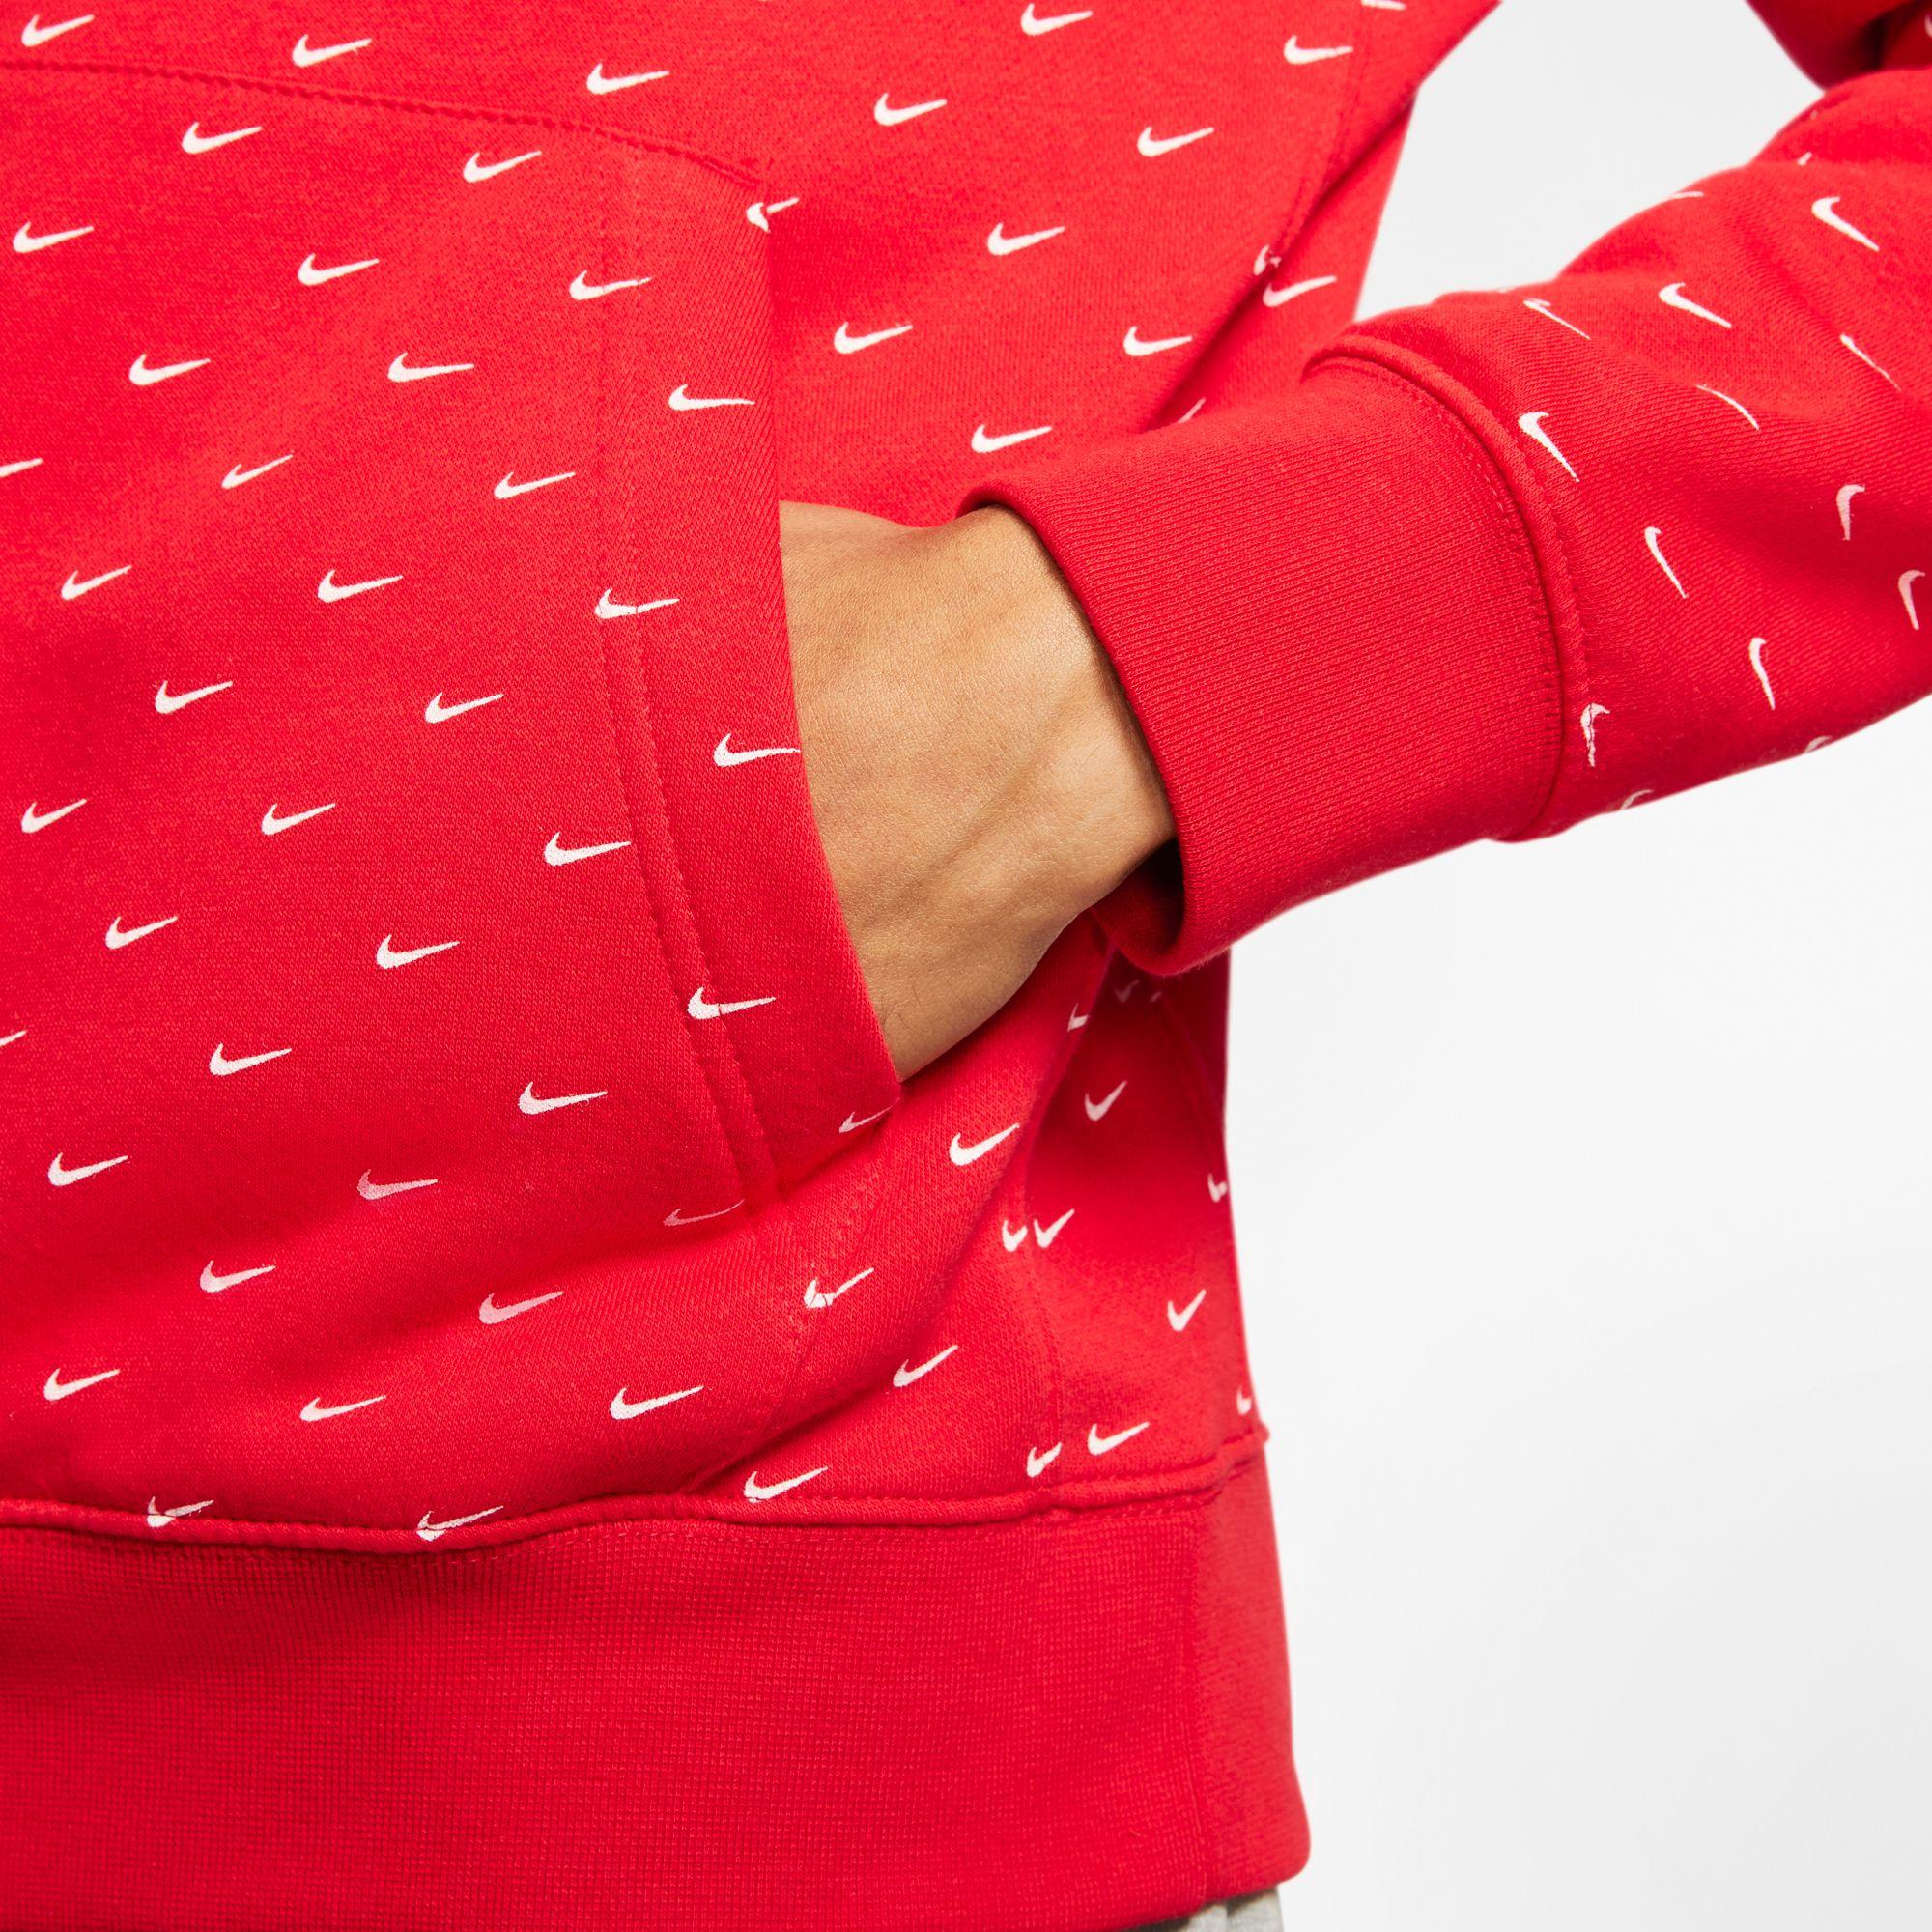 Nike Fleece Sportswear Swoosh Pullover Hoodie in University Red/White ...